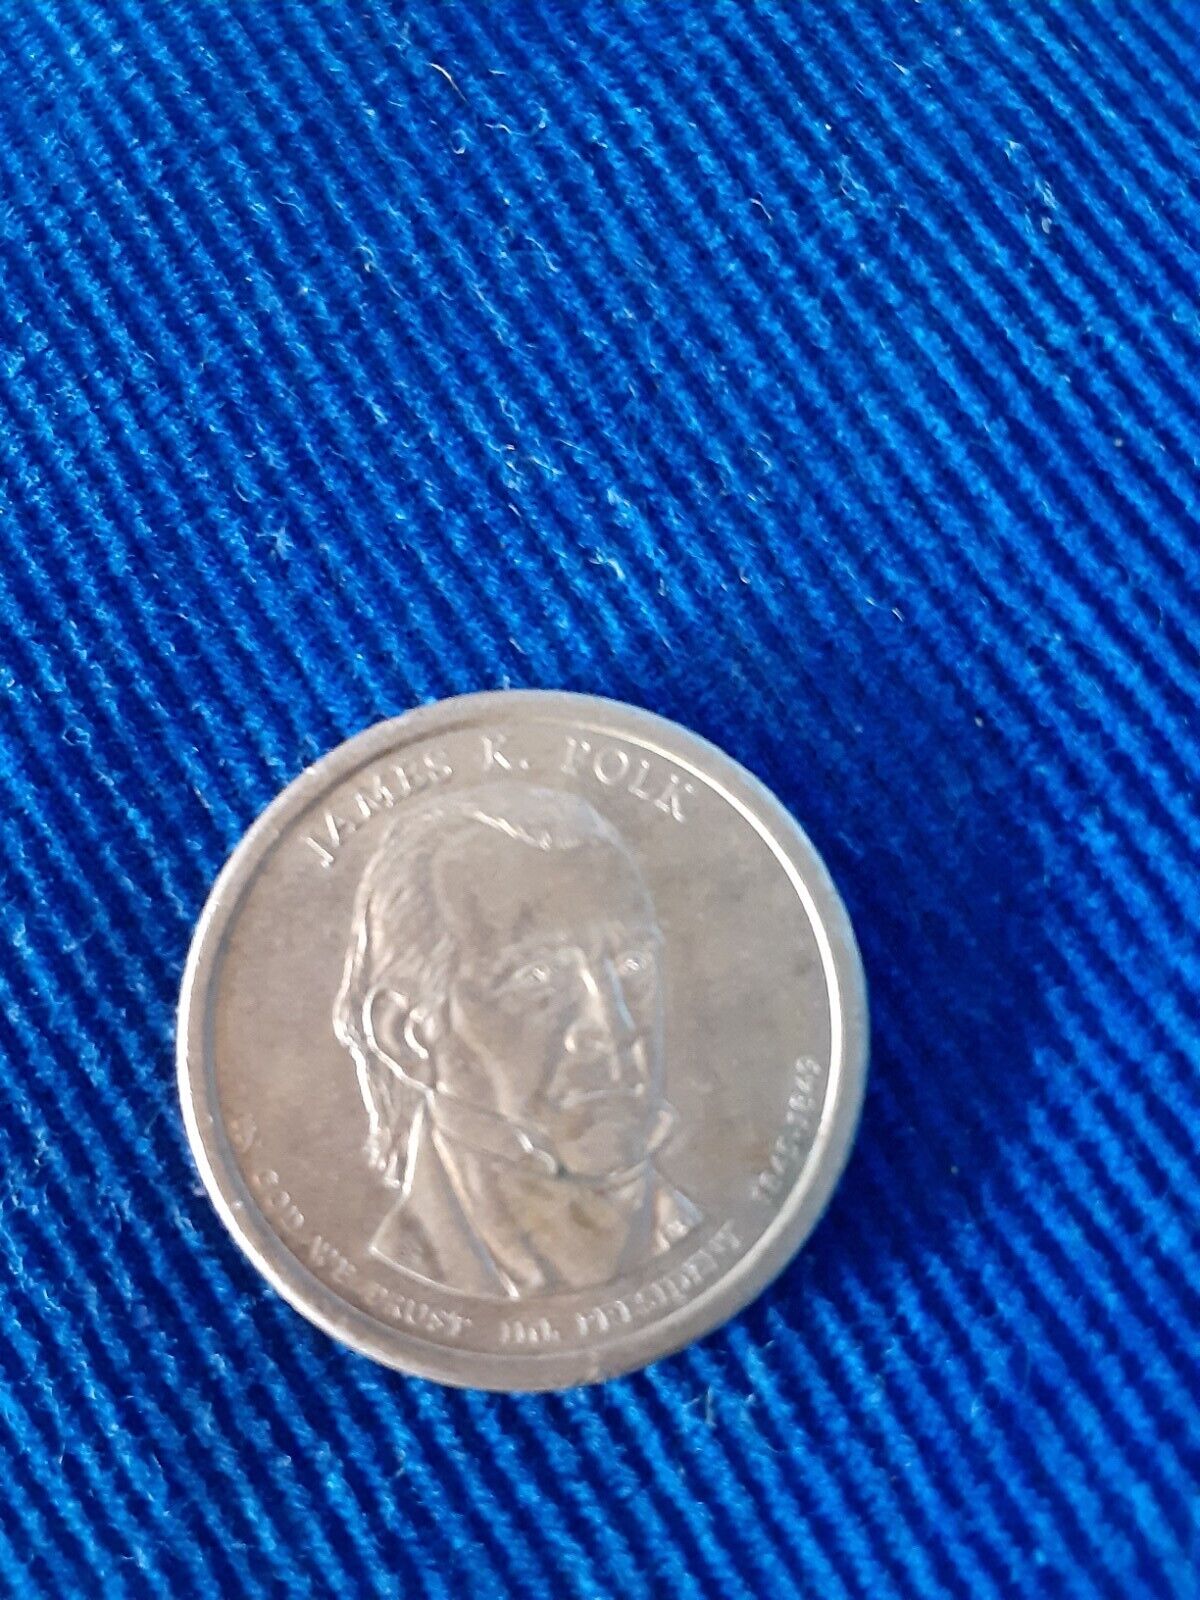 Rare President Coin - $1.00 James K. Polk, 11th President, United States REDUCED